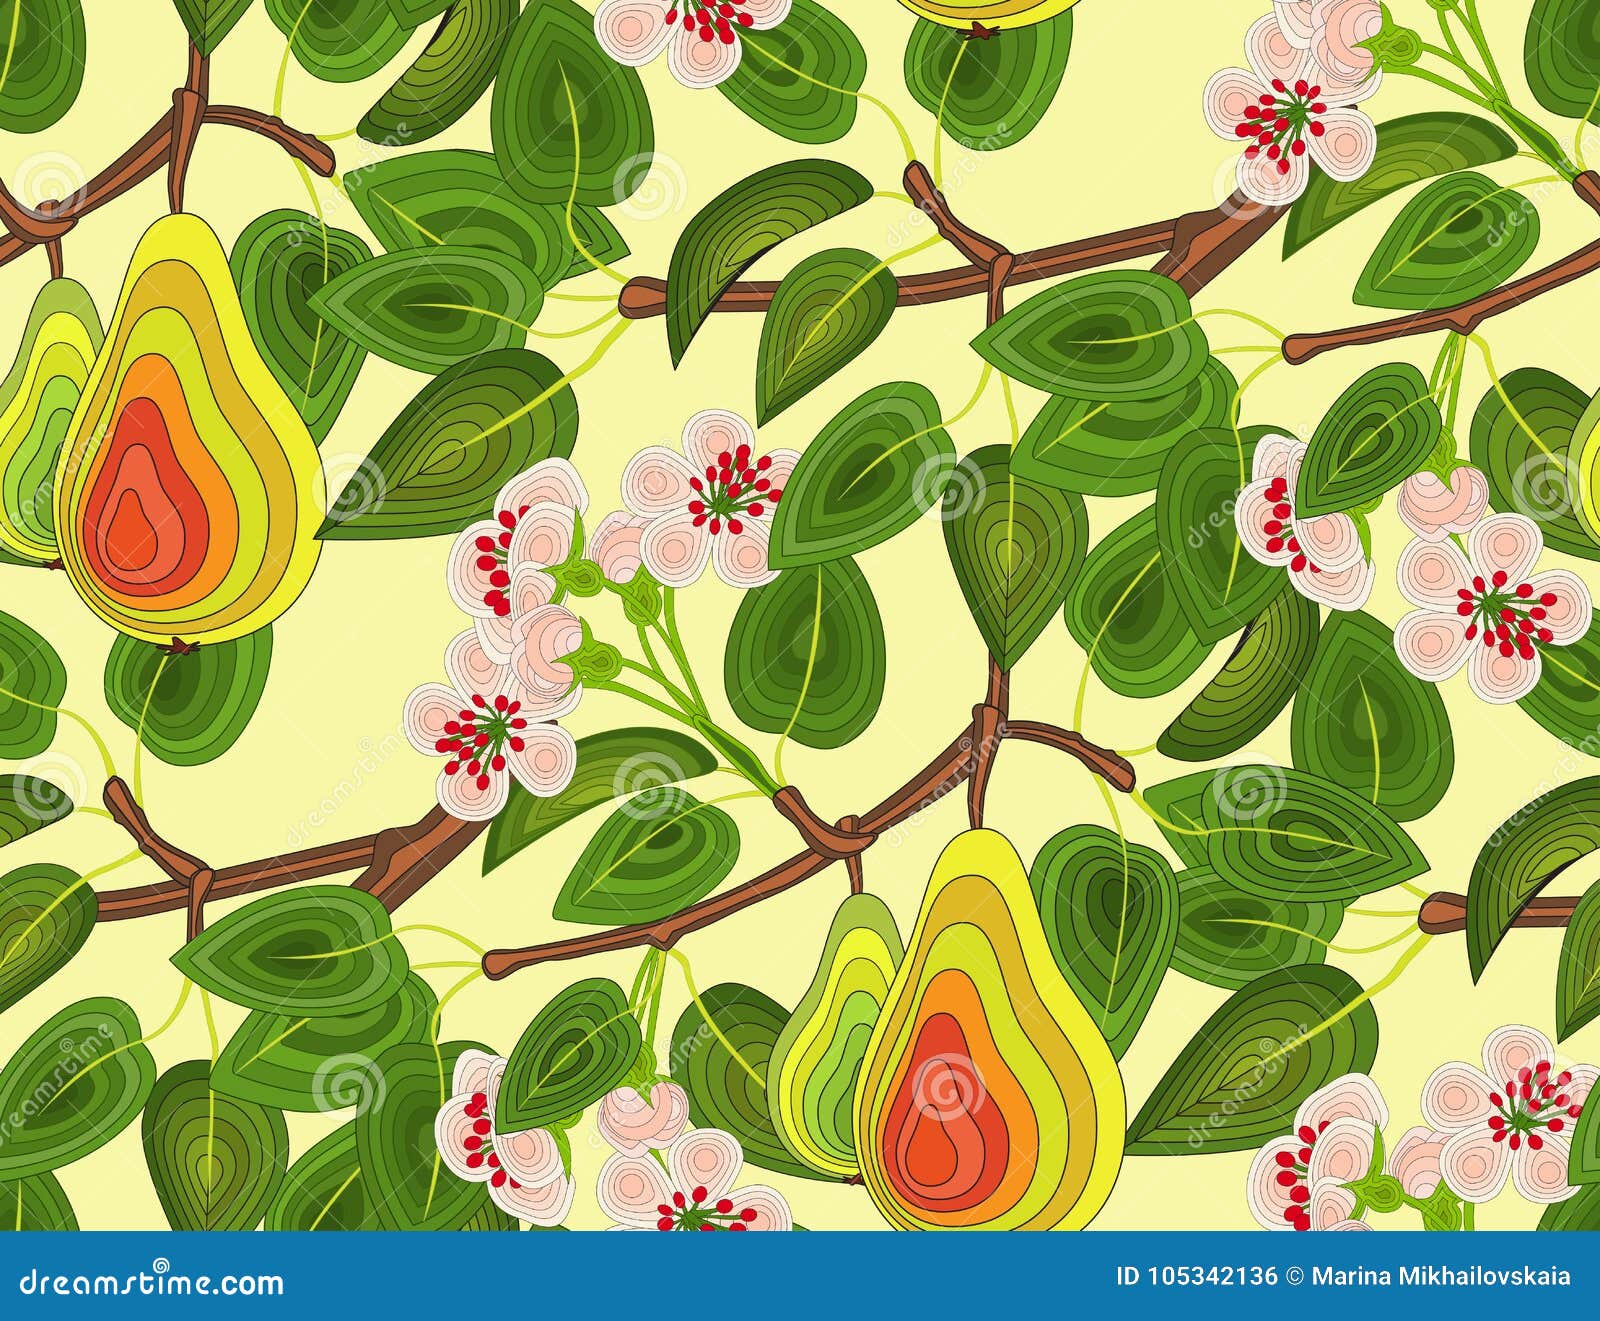 Pear tree branch  Flower HD wallpaper  Pxfuel